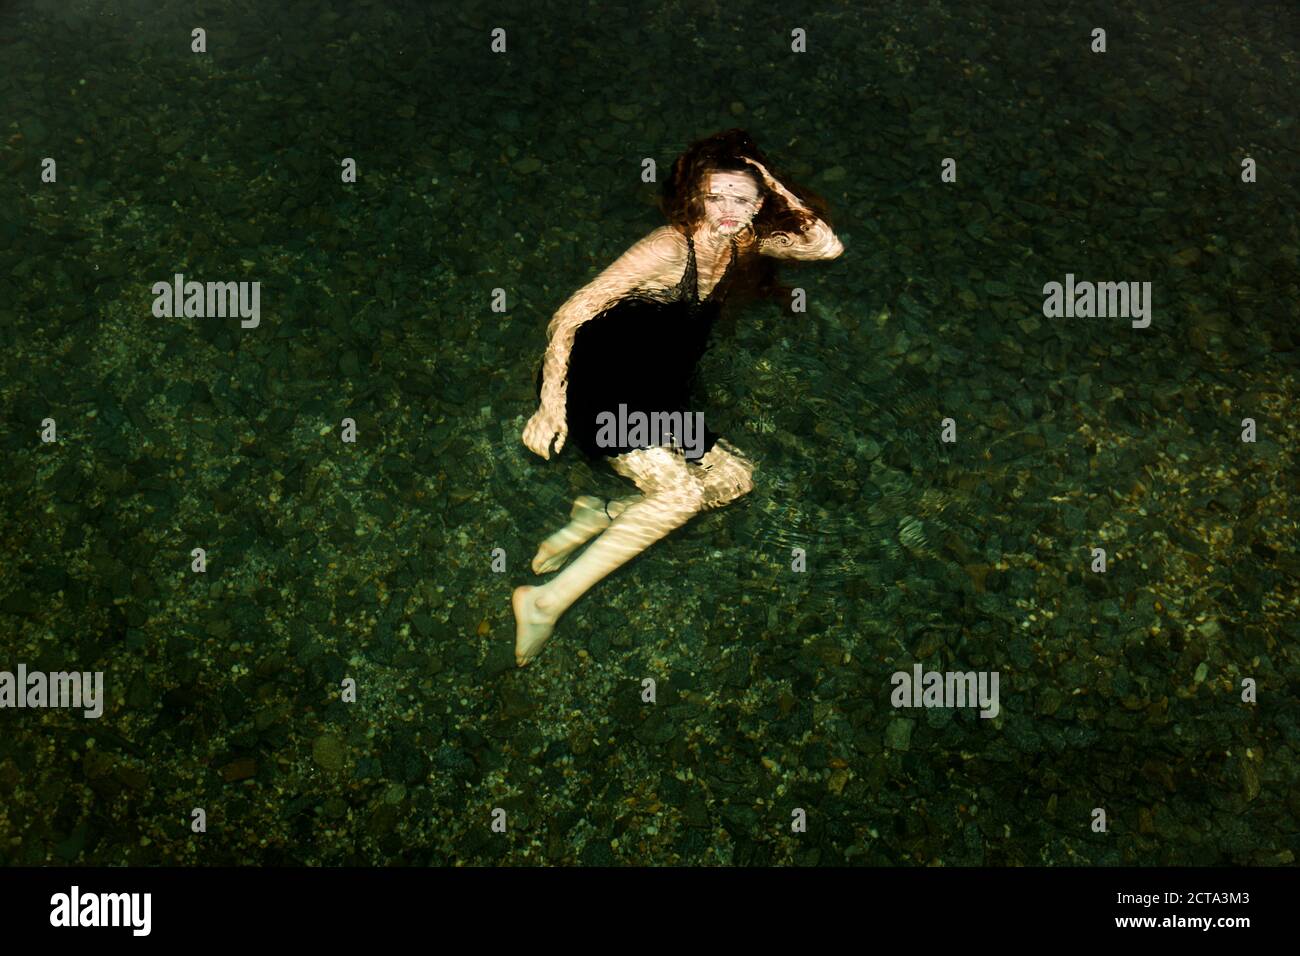 Germania, giovane donna sotto l'acqua, guardando alla fotocamera Foto Stock